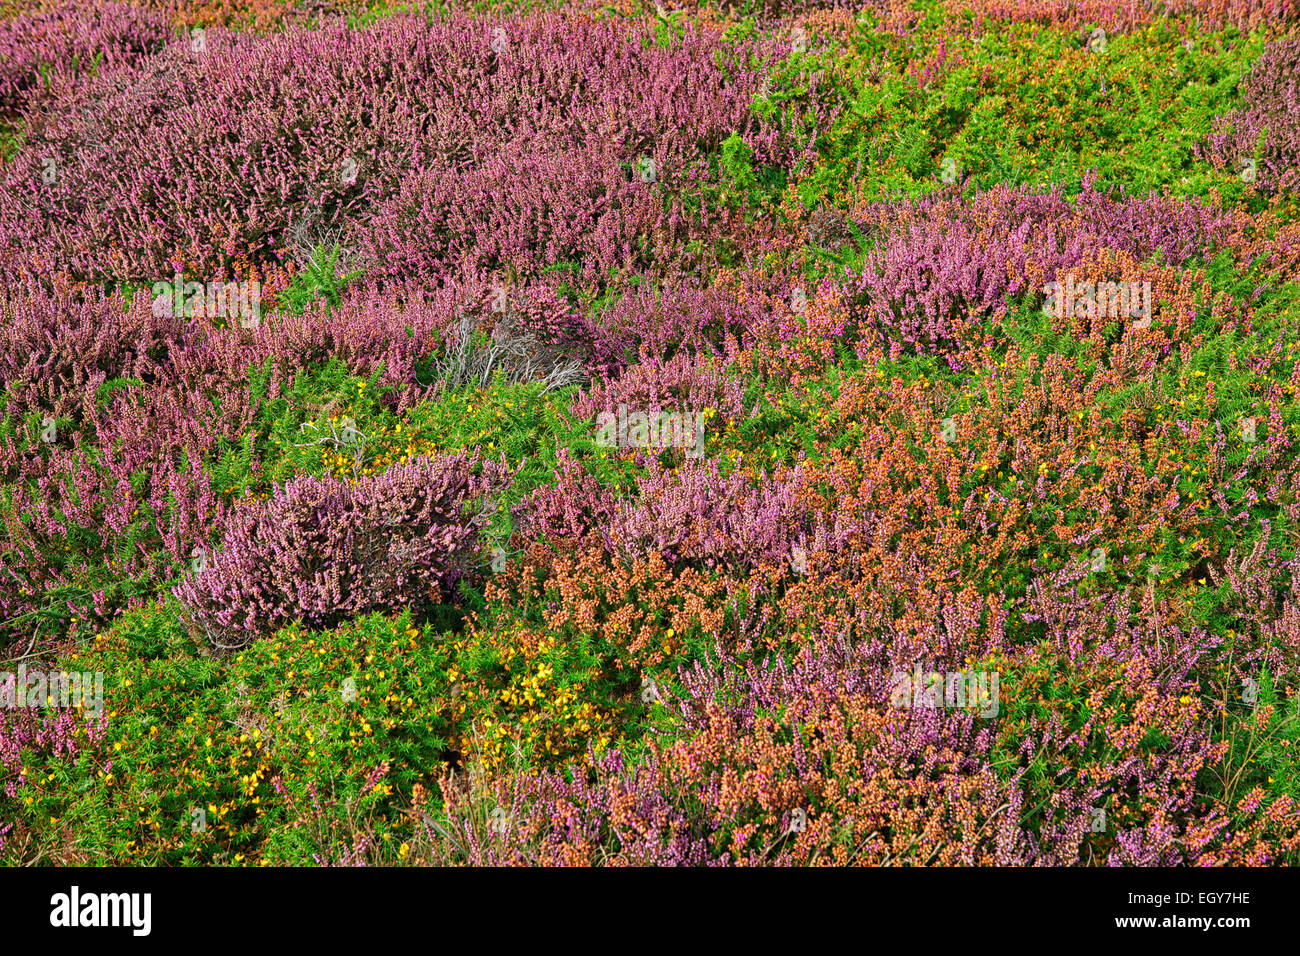 France, Pointe de Pen-Hir, Field of wild flowers Stock Photo